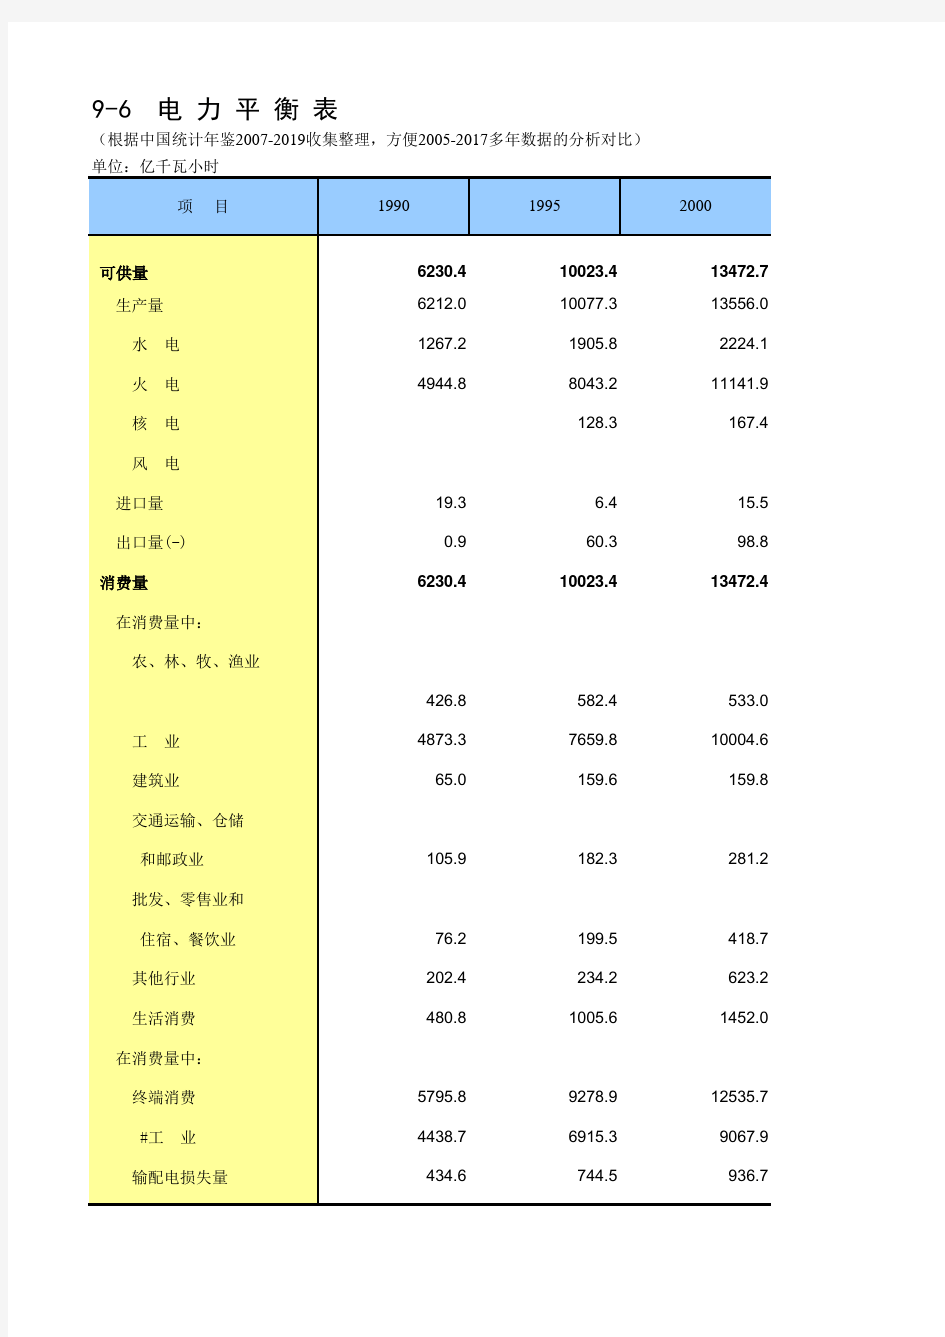 9-6 中国统计年鉴数据处理：电力平衡表(仅全国指标,方便2005-2017多年数据的分析对比)